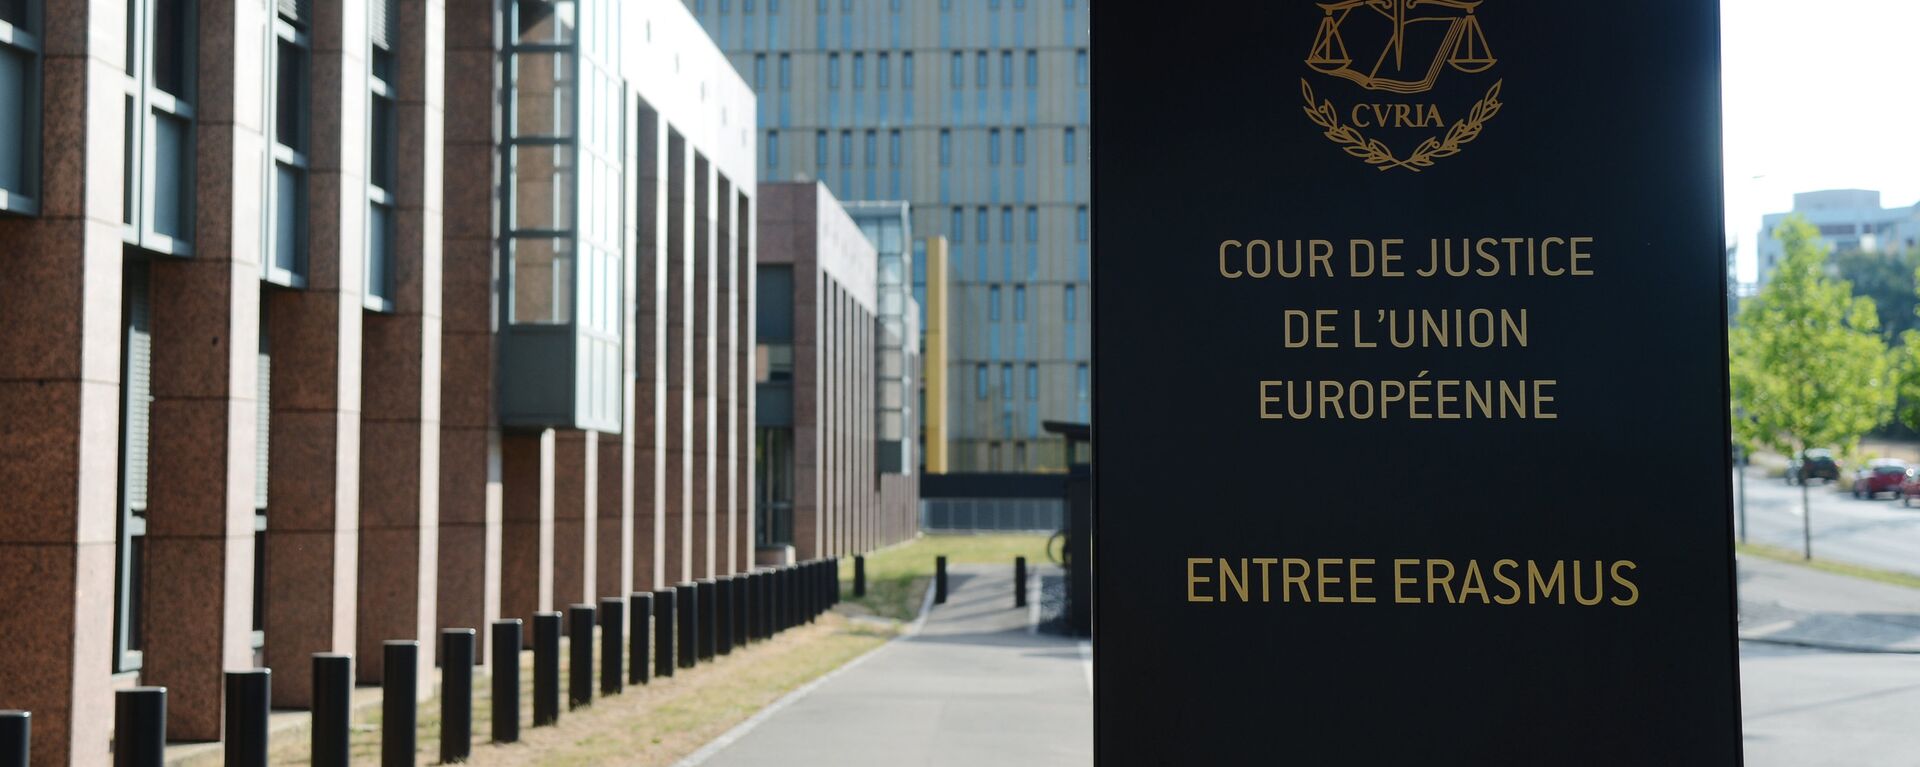 Вход в здание Европейского суда в Люксембурге - Sputnik Латвия, 1920, 26.09.2018